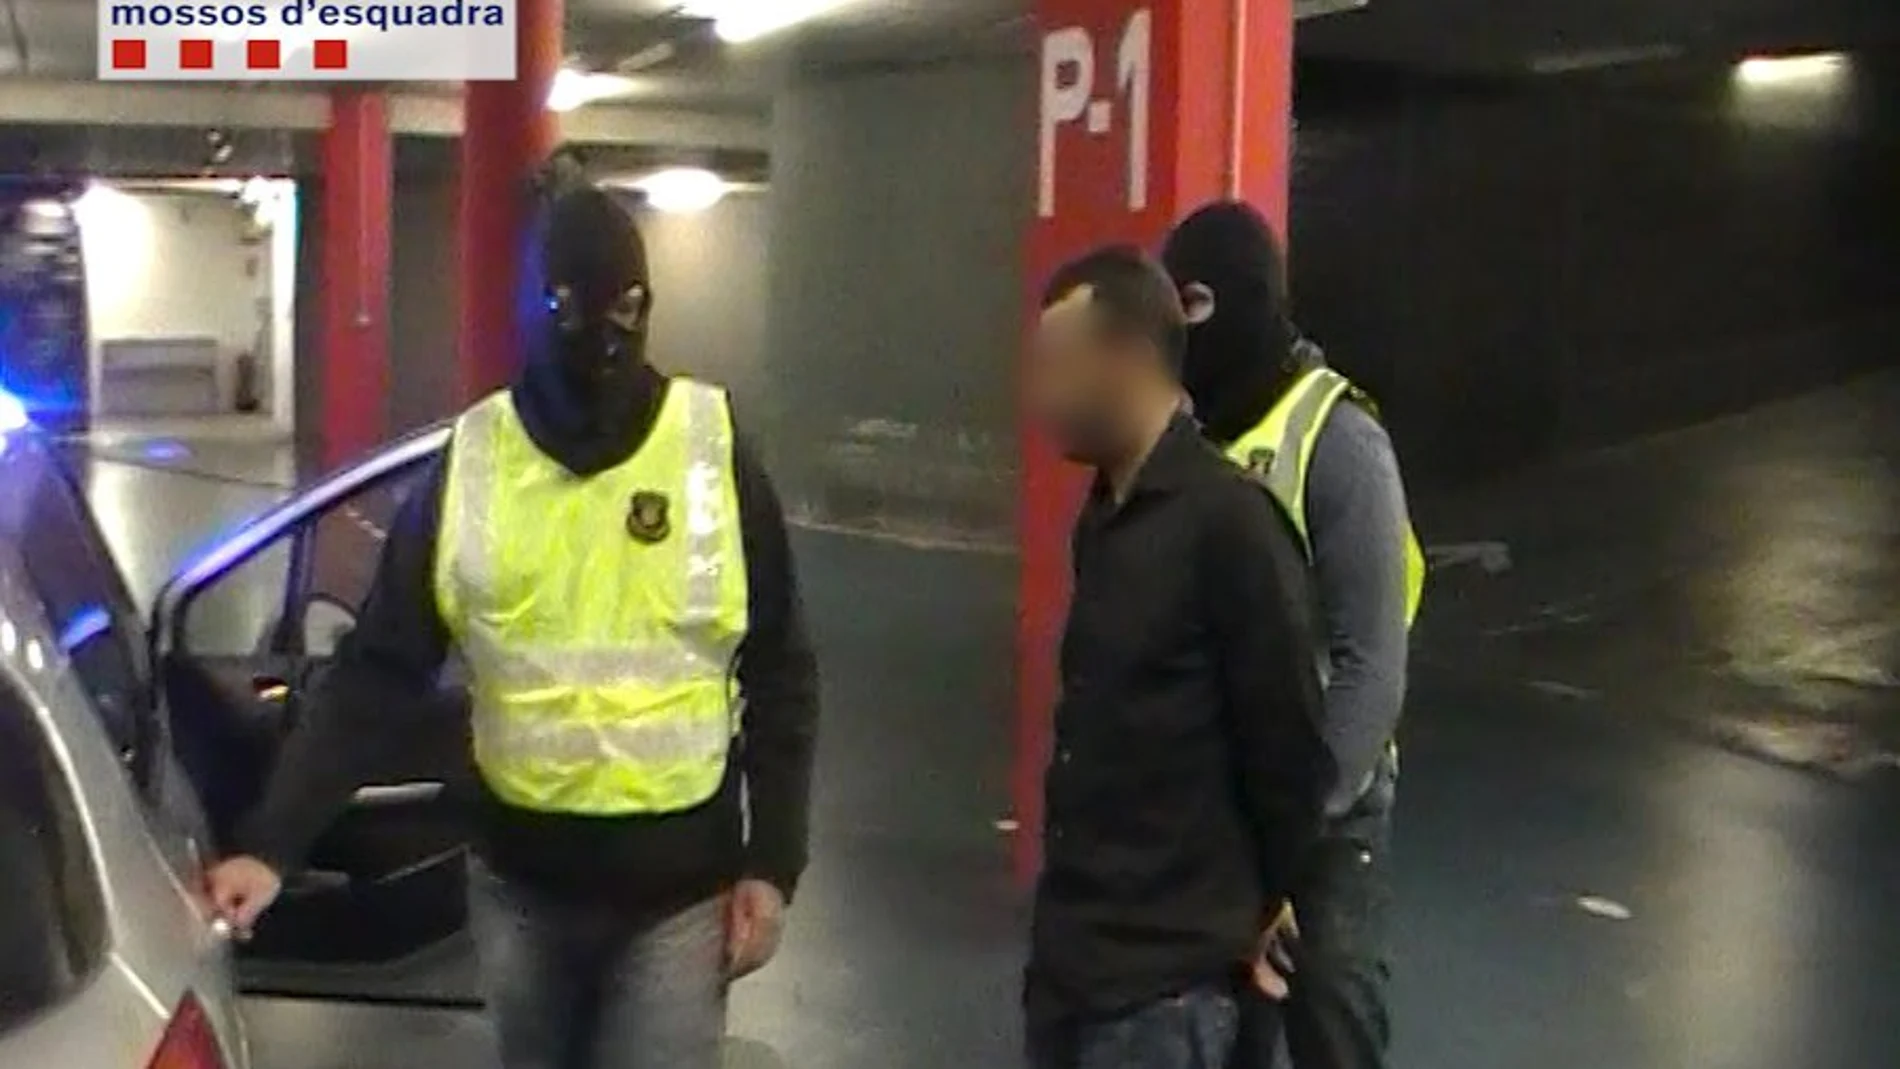 Los agentes de los Mossos d'Esquadra conducen al terrorista detenido.